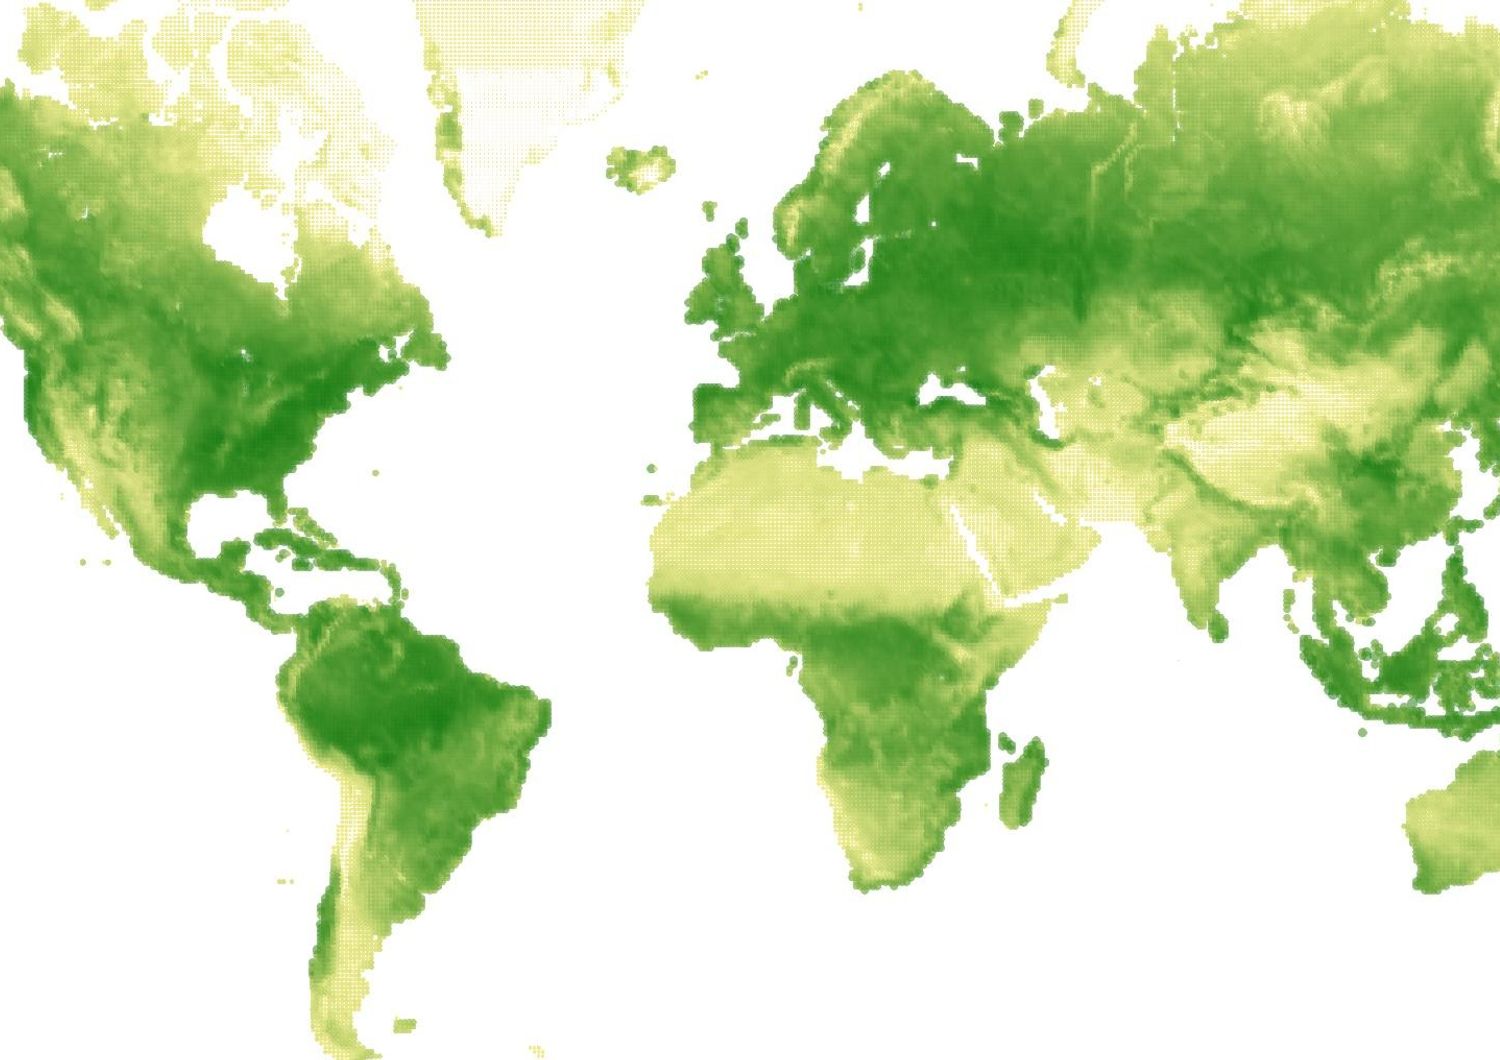 Immagine della &quot;Terra che respira&quot; dal sito&nbsp;www.datasketch.es